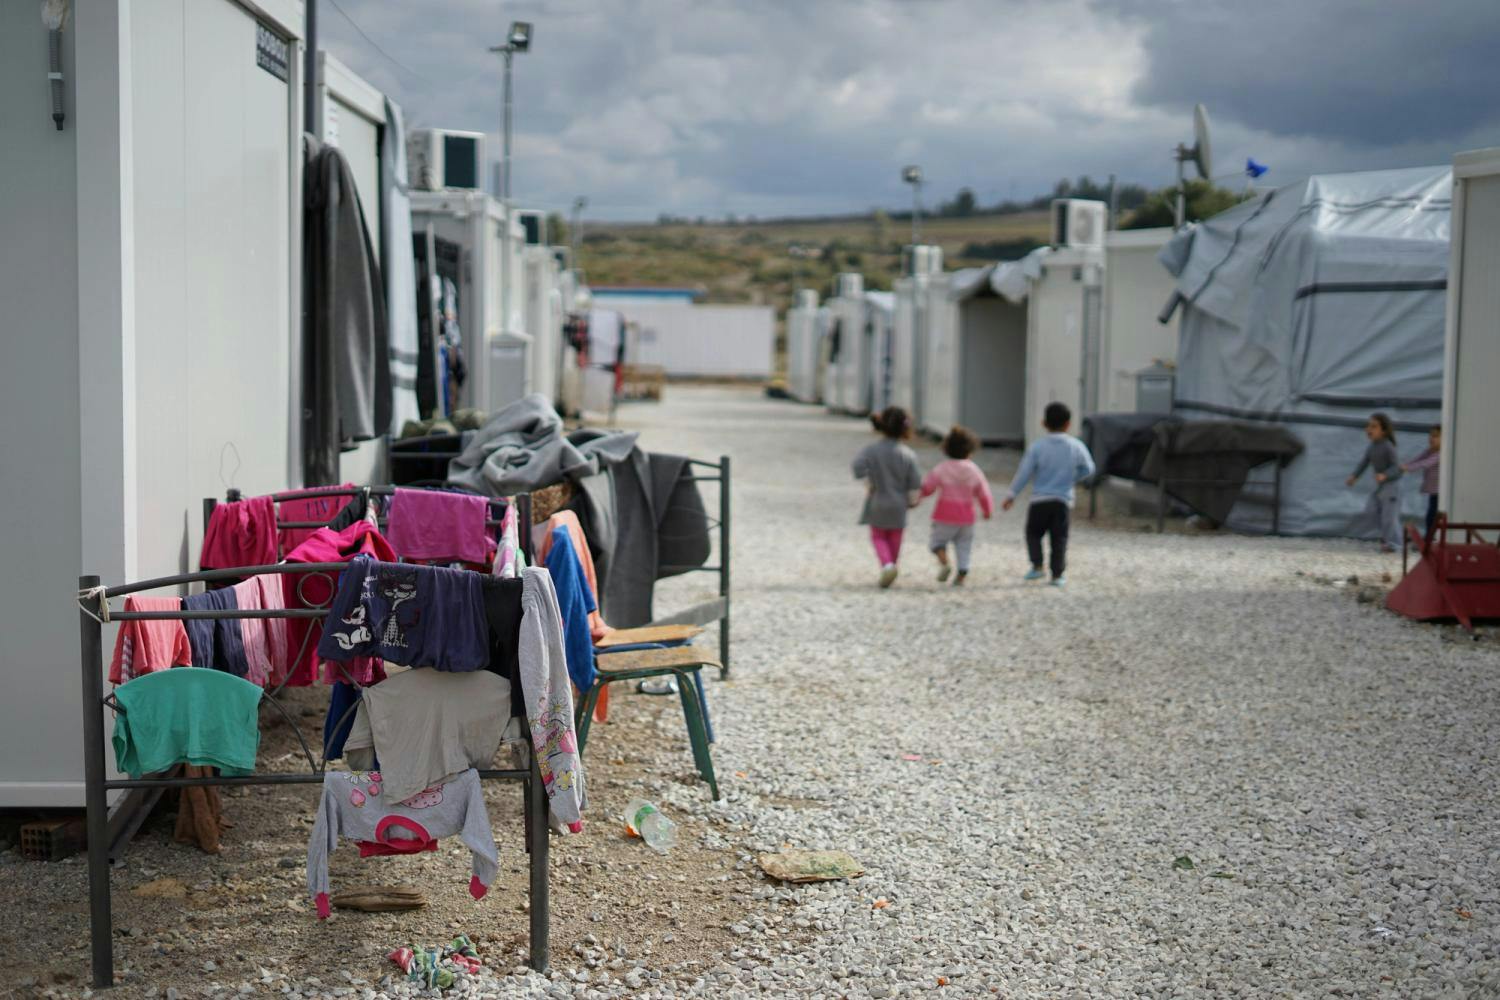 Bilde fra en flyktningleir. Bilde av klær som tørker og noen barn i bakgrunnen 